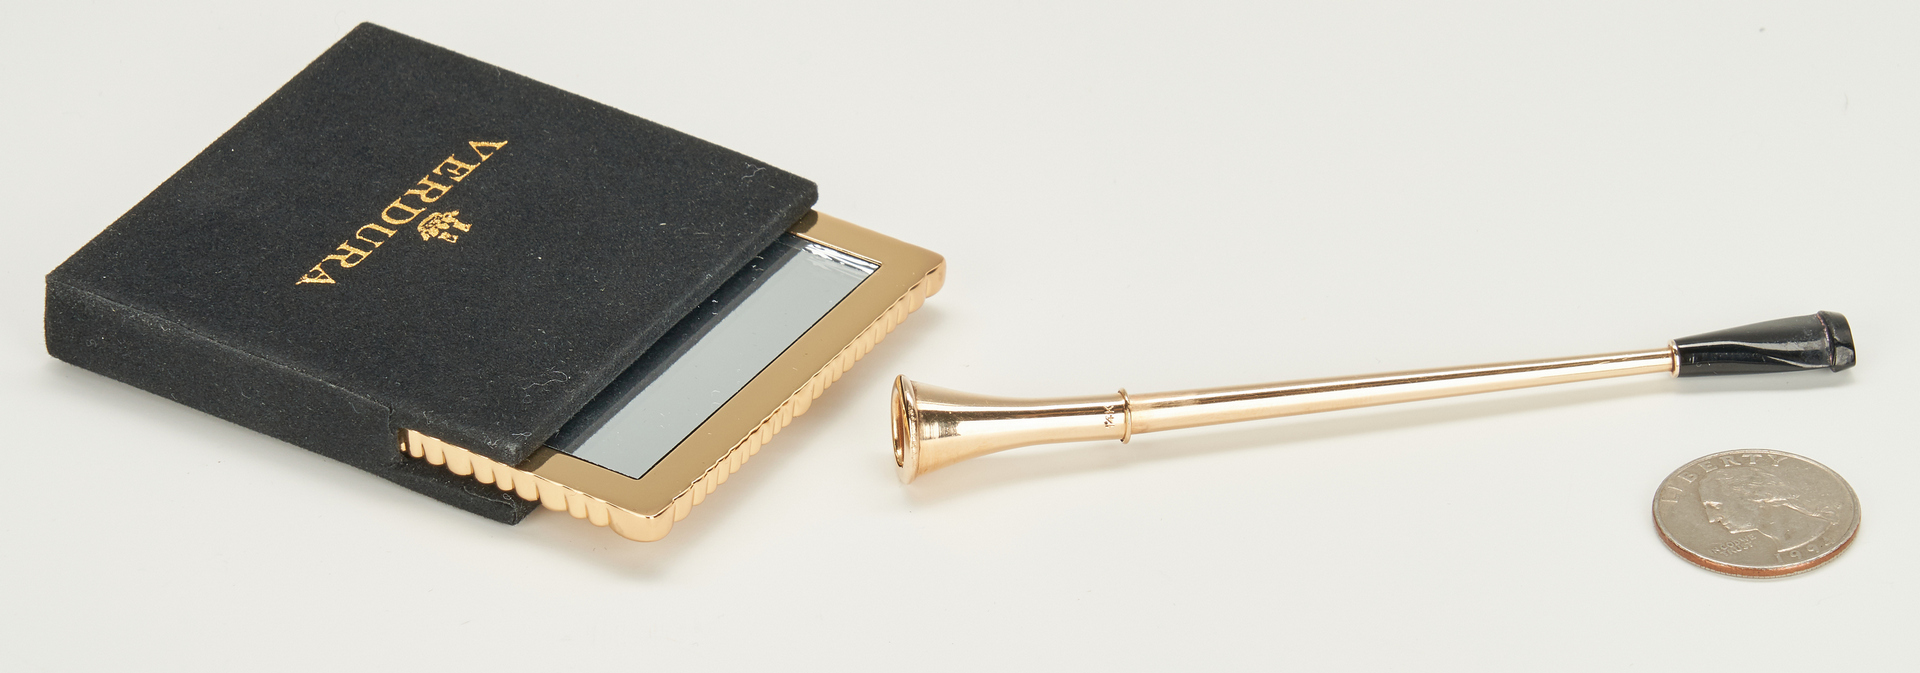 Lot 921: Tiffany Gold Cigarette Holder, Verdura Pocket Mirror, 2 items